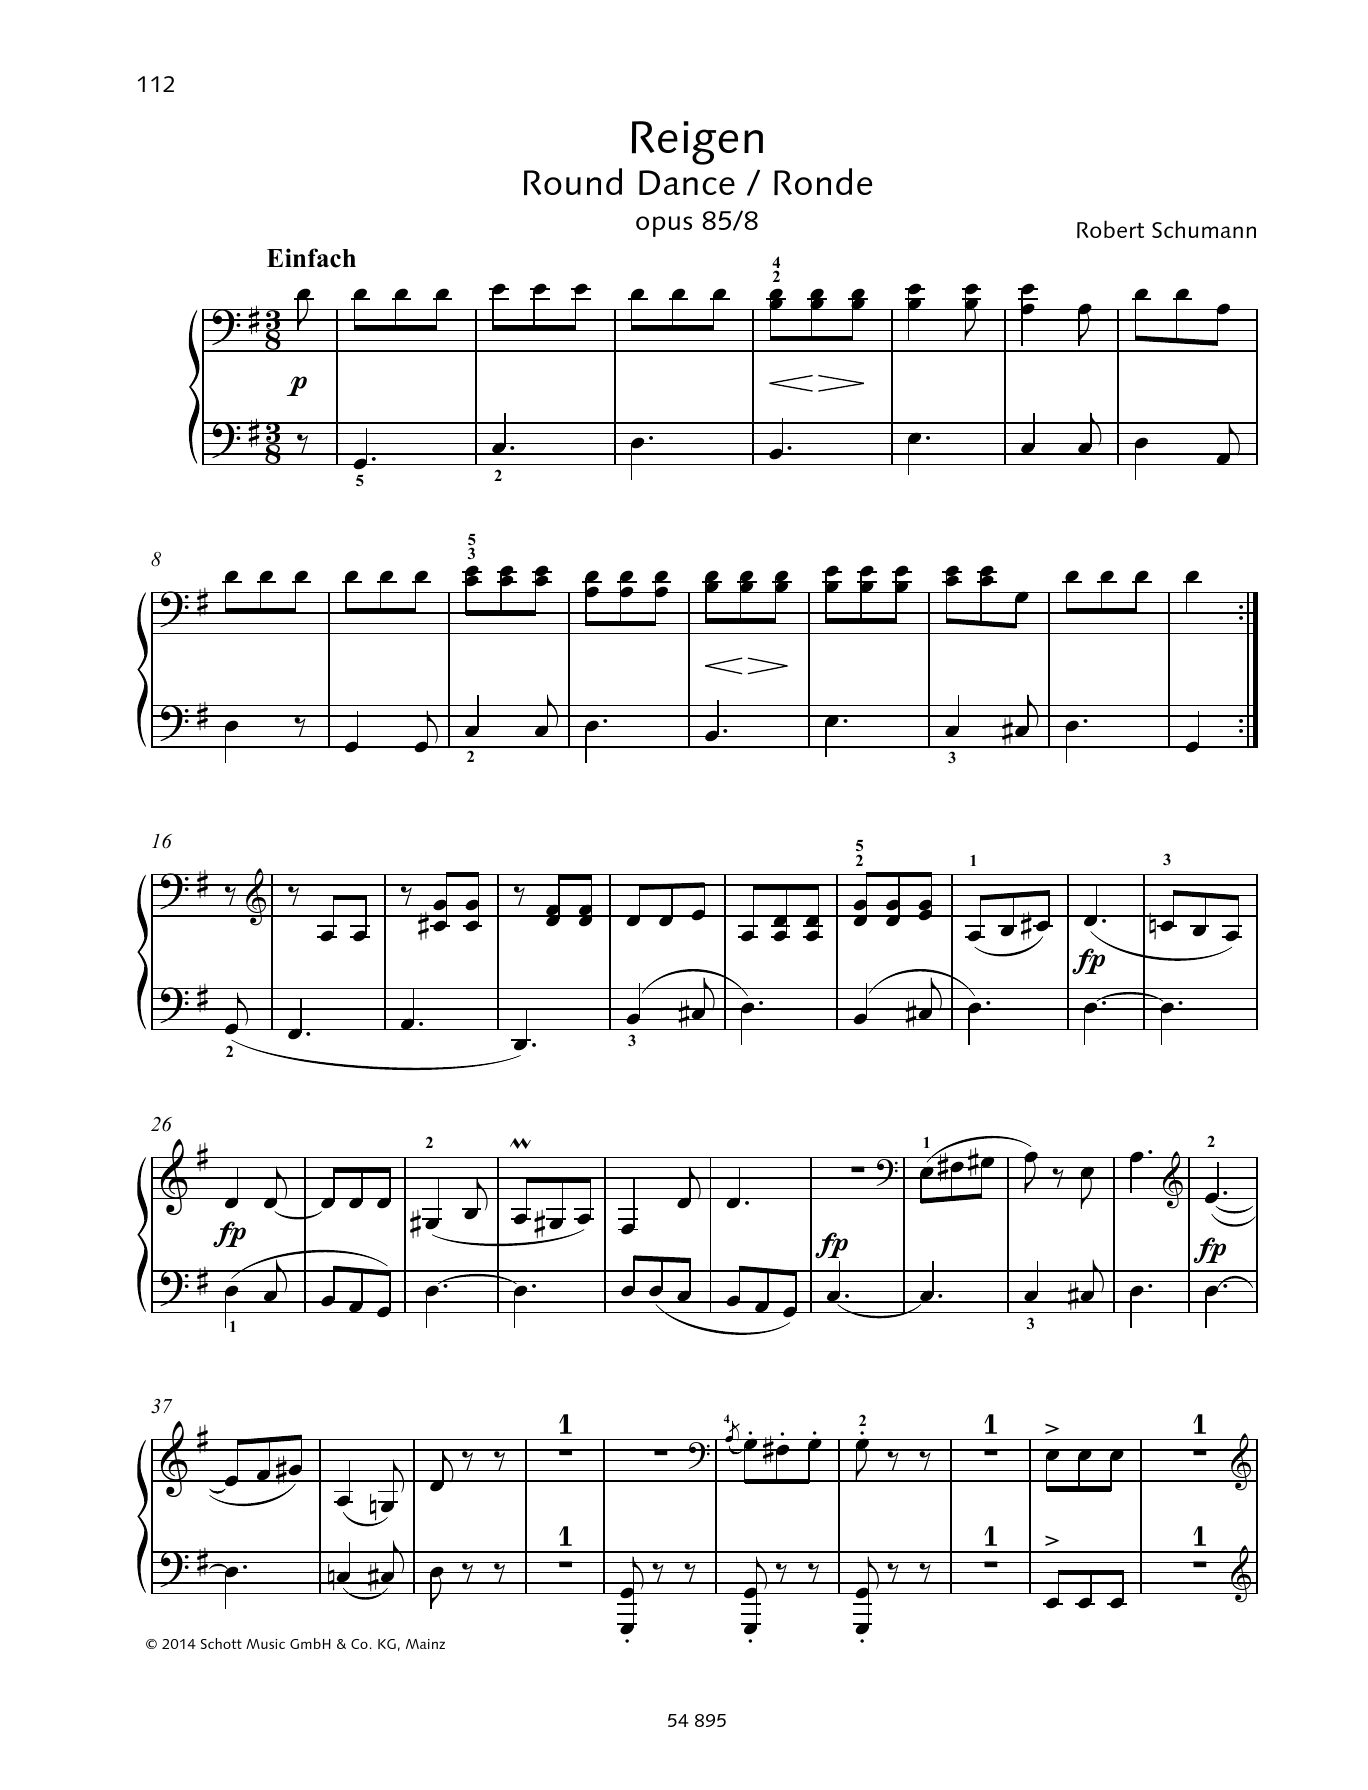 Download Robert Schumann Round Dance Sheet Music